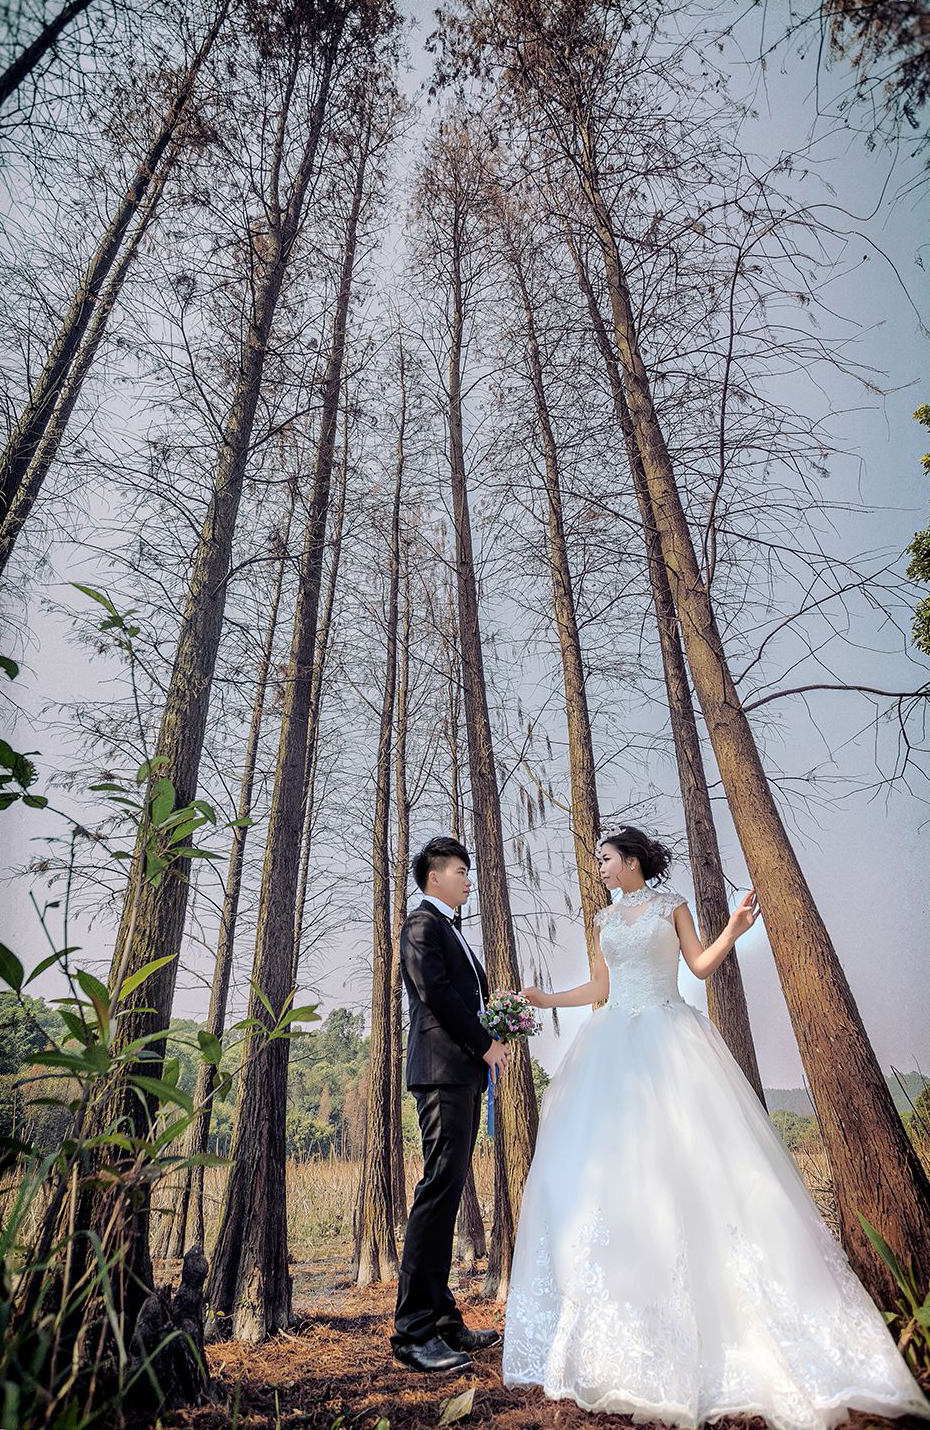 2017年8月广州结婚照,云浮婚纱照,婚纱照图片